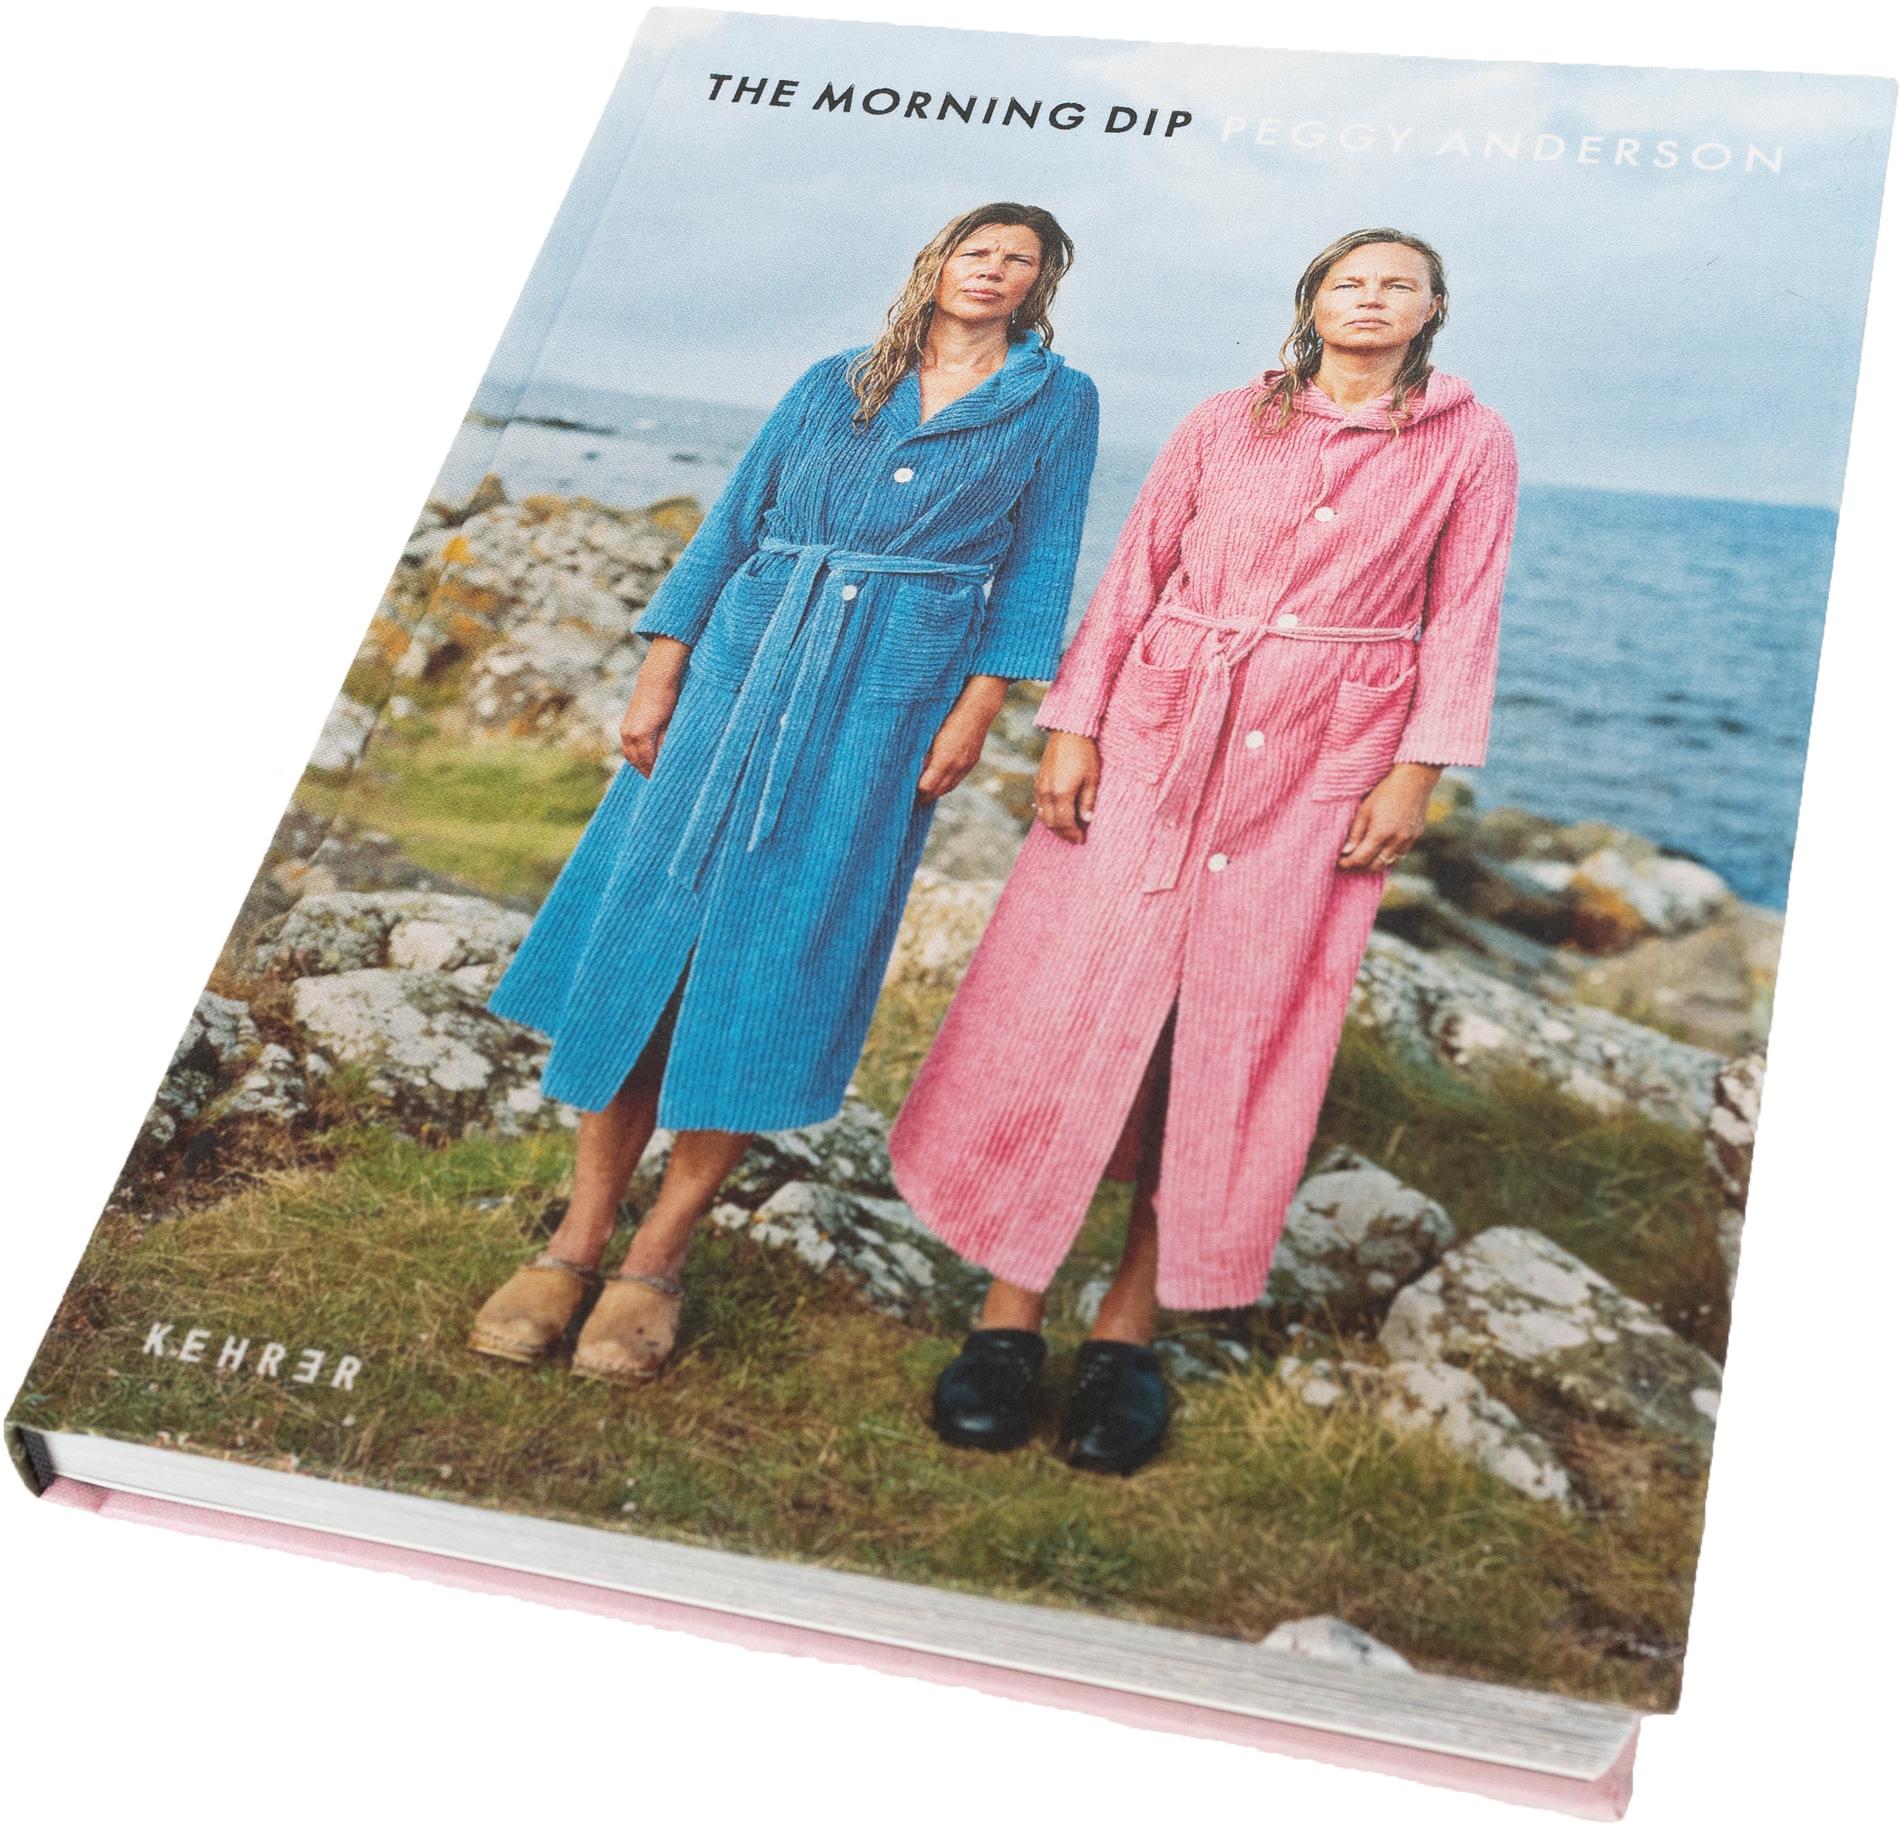 Boken "The morning dip" ges ut av ett tyskt förlag. Pressbild.